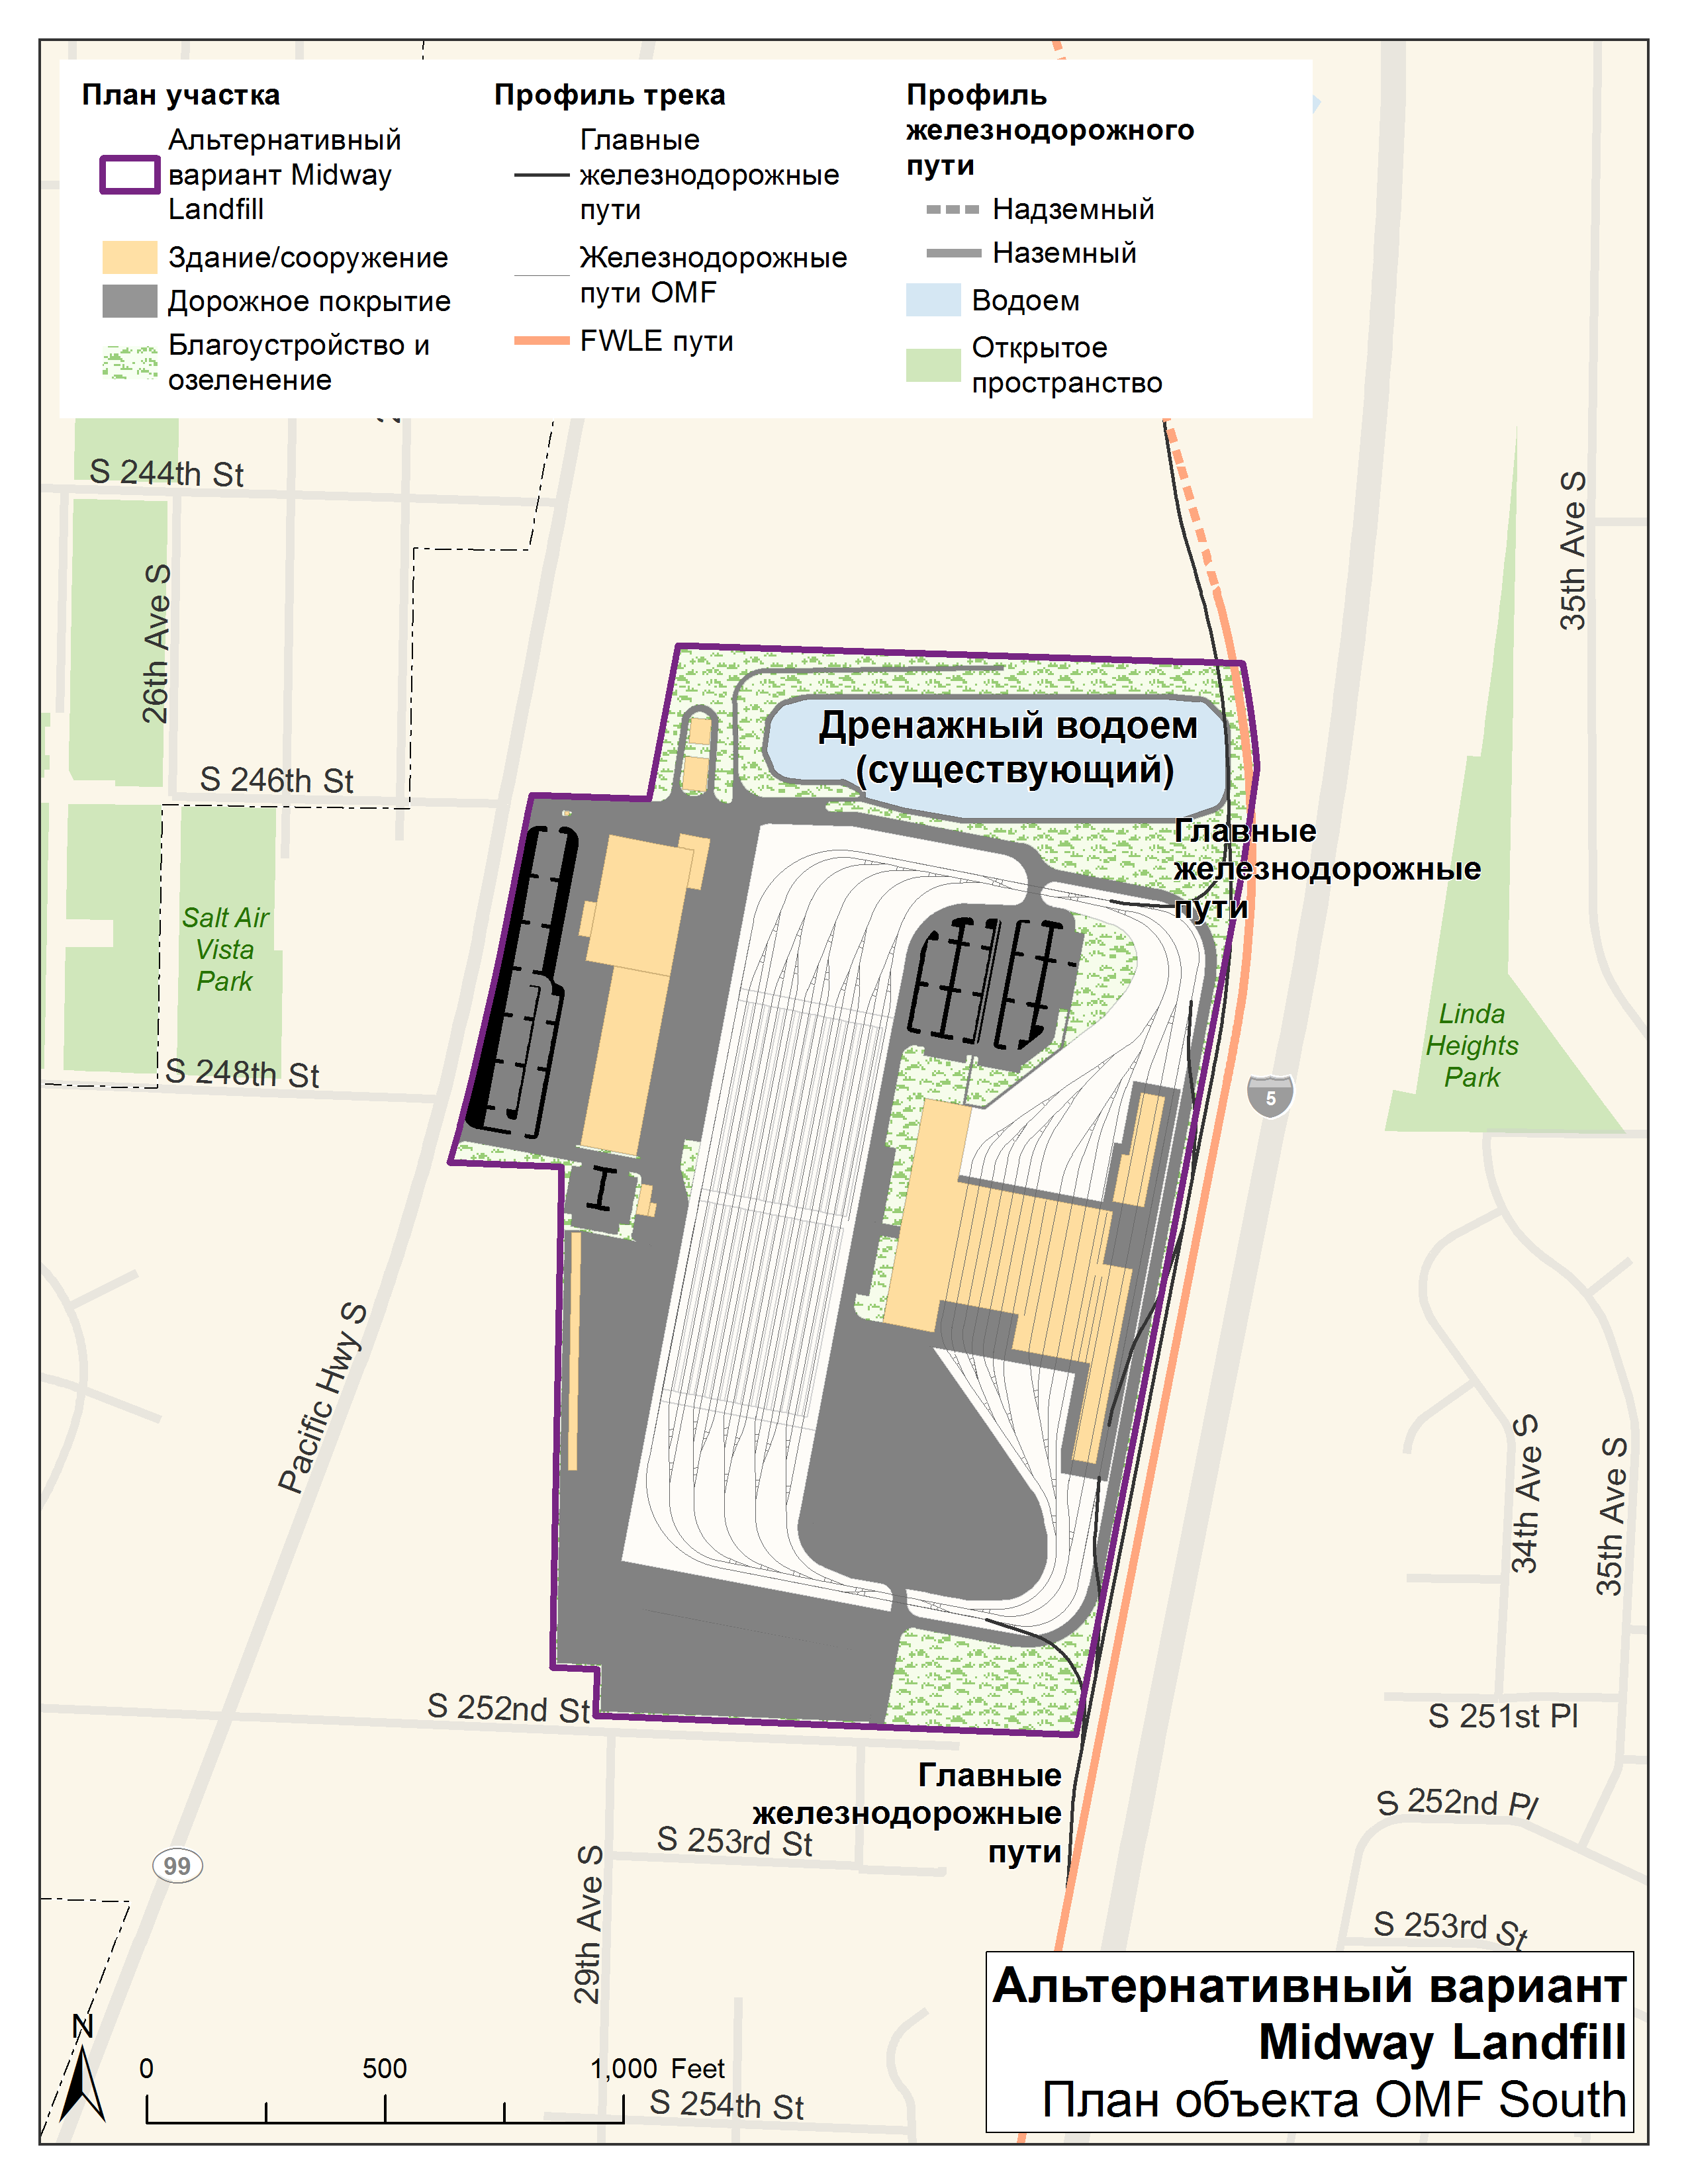 Карта альтернативного варианта участка Midway Landfill в Kent. Участок будет расположен на Midway Landfill, к западу от I-5.